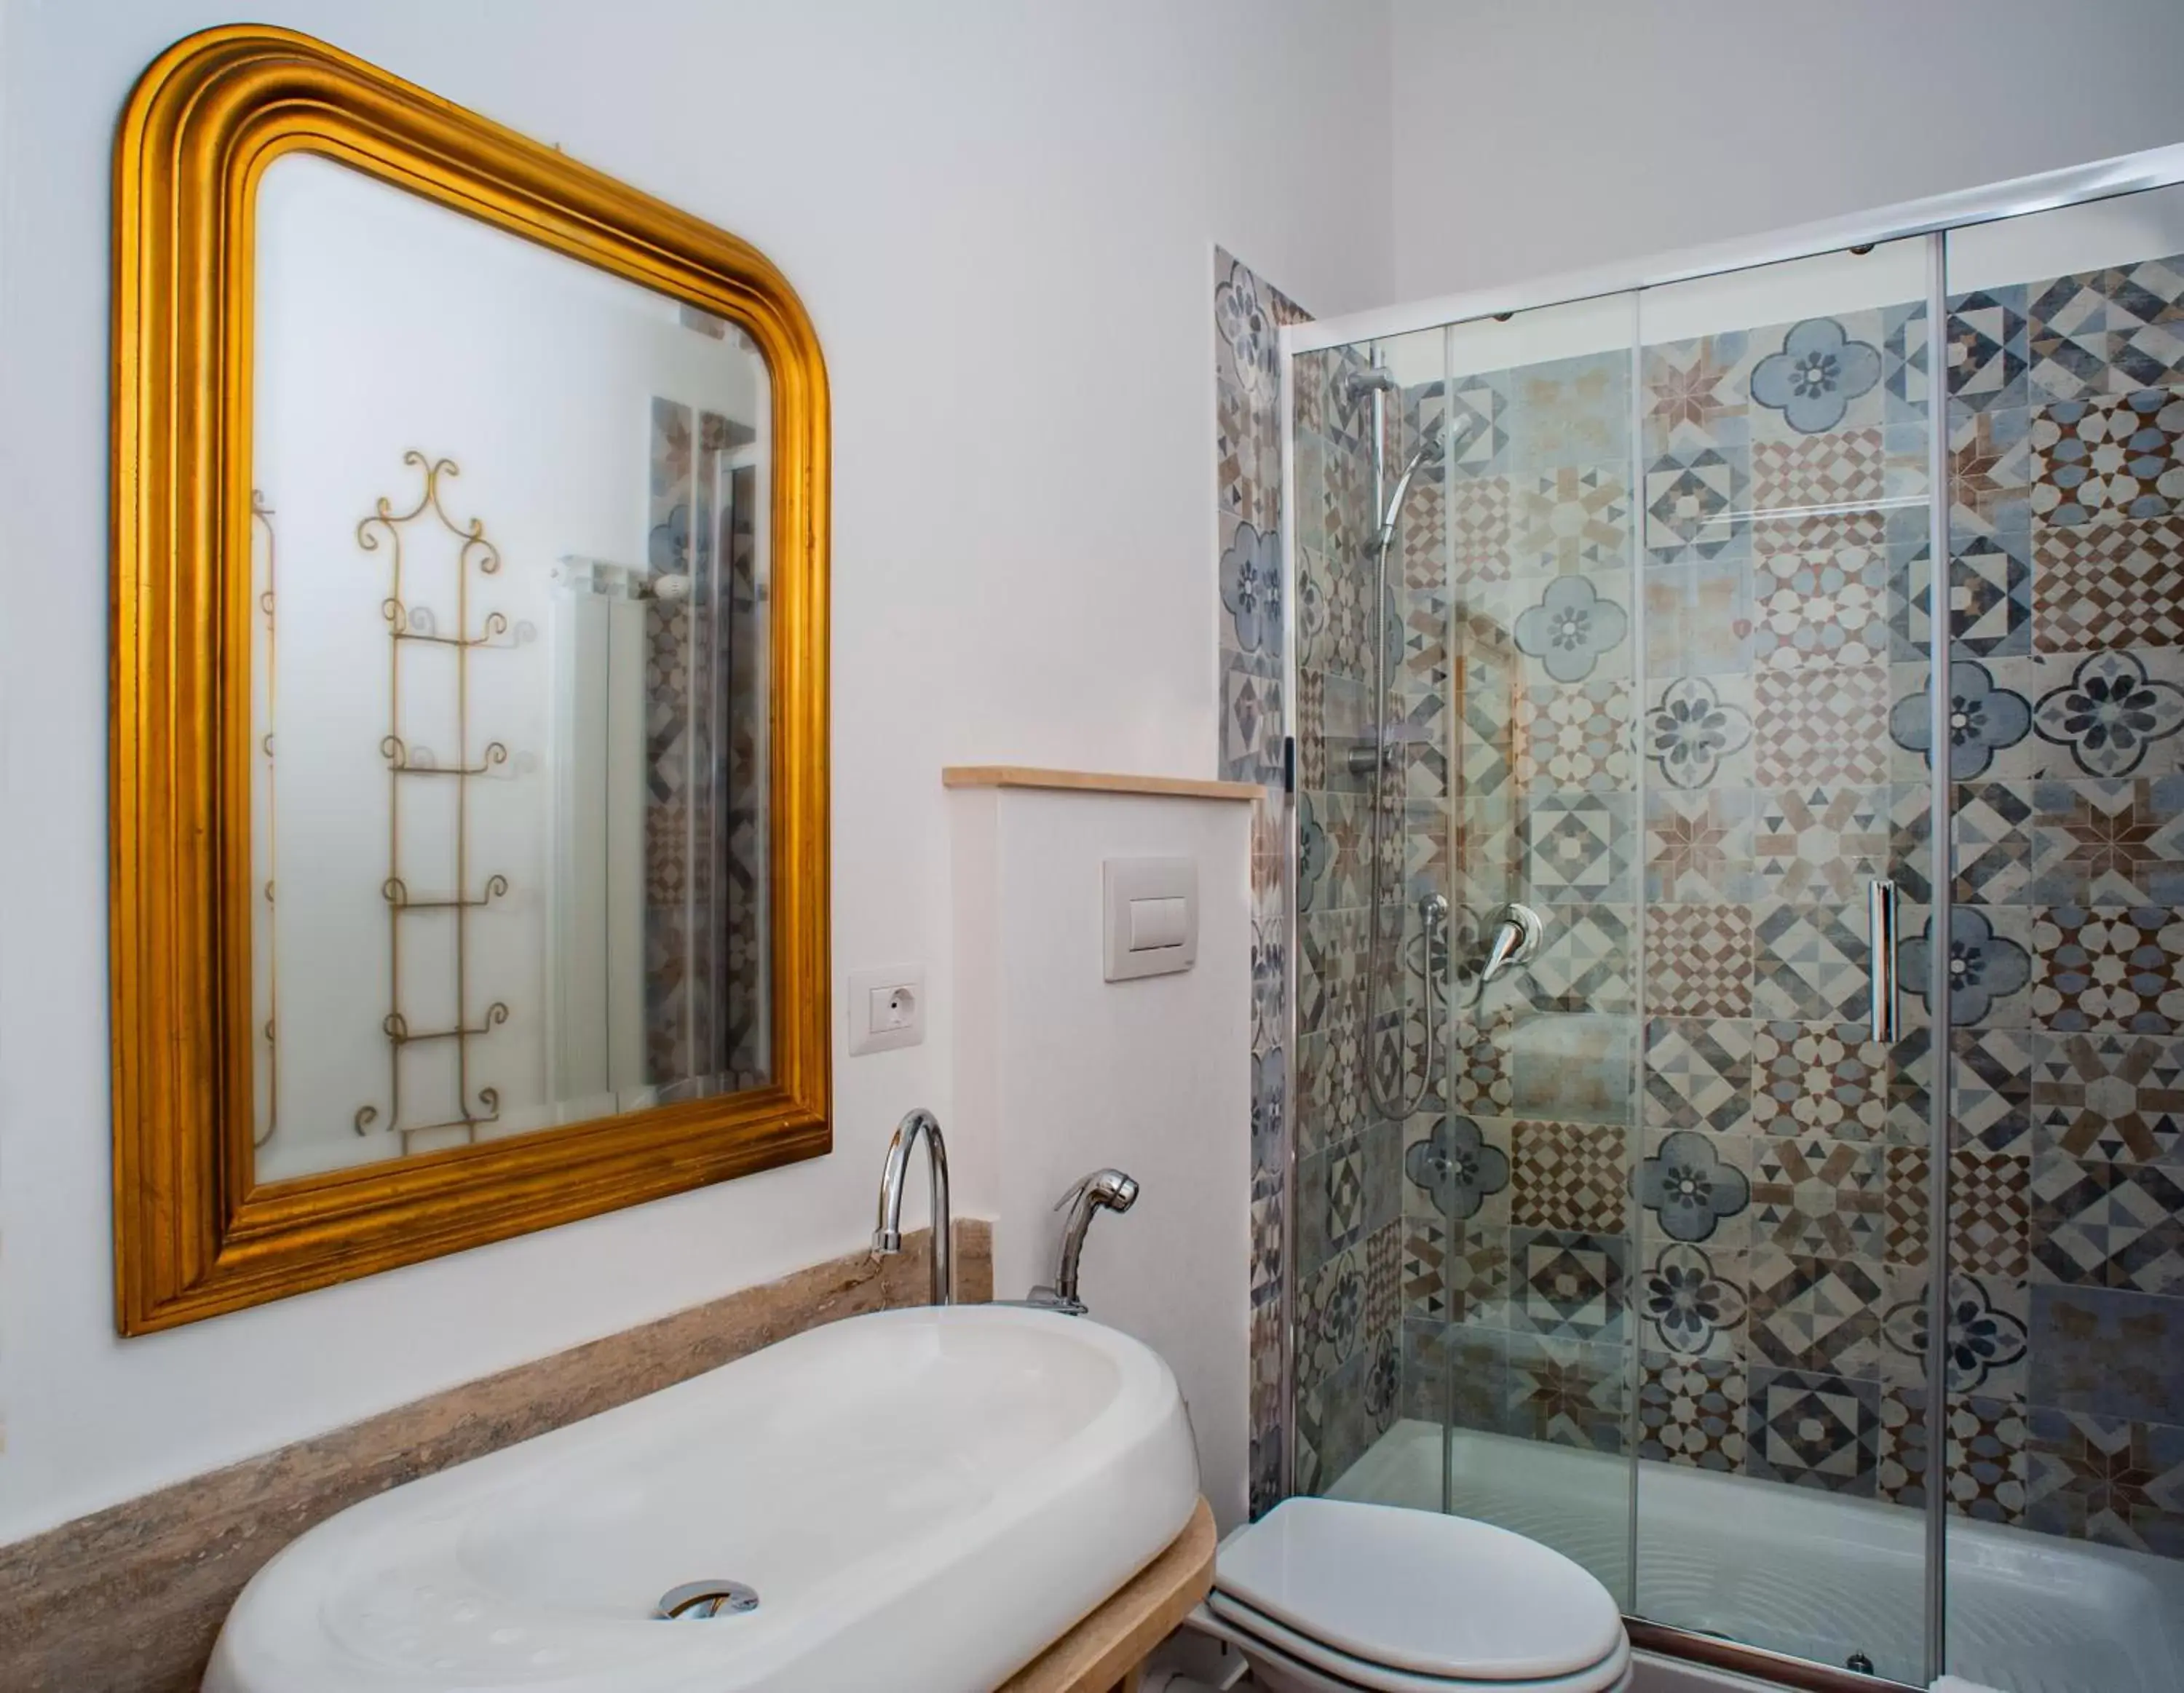 Bathroom in B&B Buonfiglio Cicconcelli - Terrazza panoramica